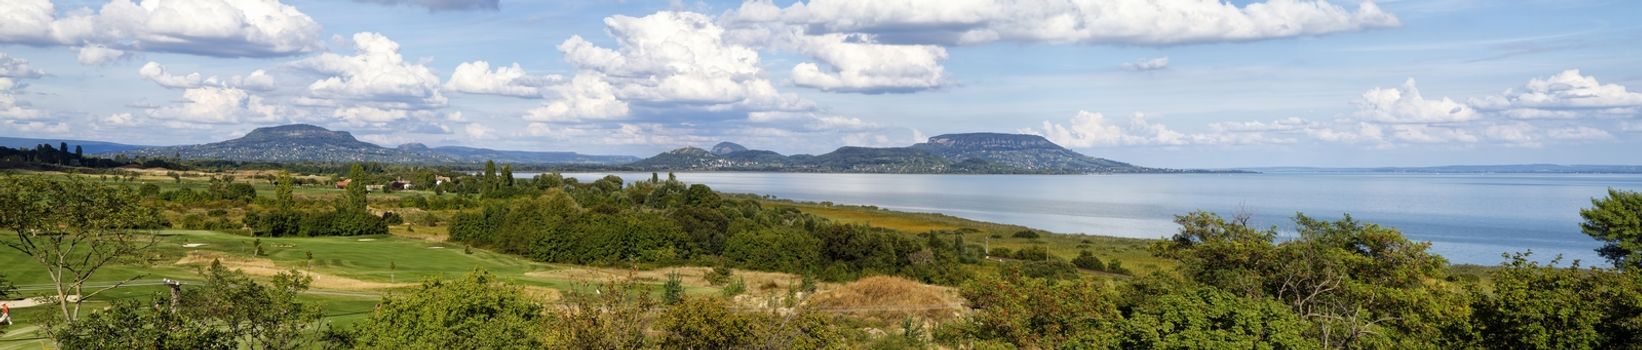 Nice panorama landscape from Hungary (Lake Balaton)